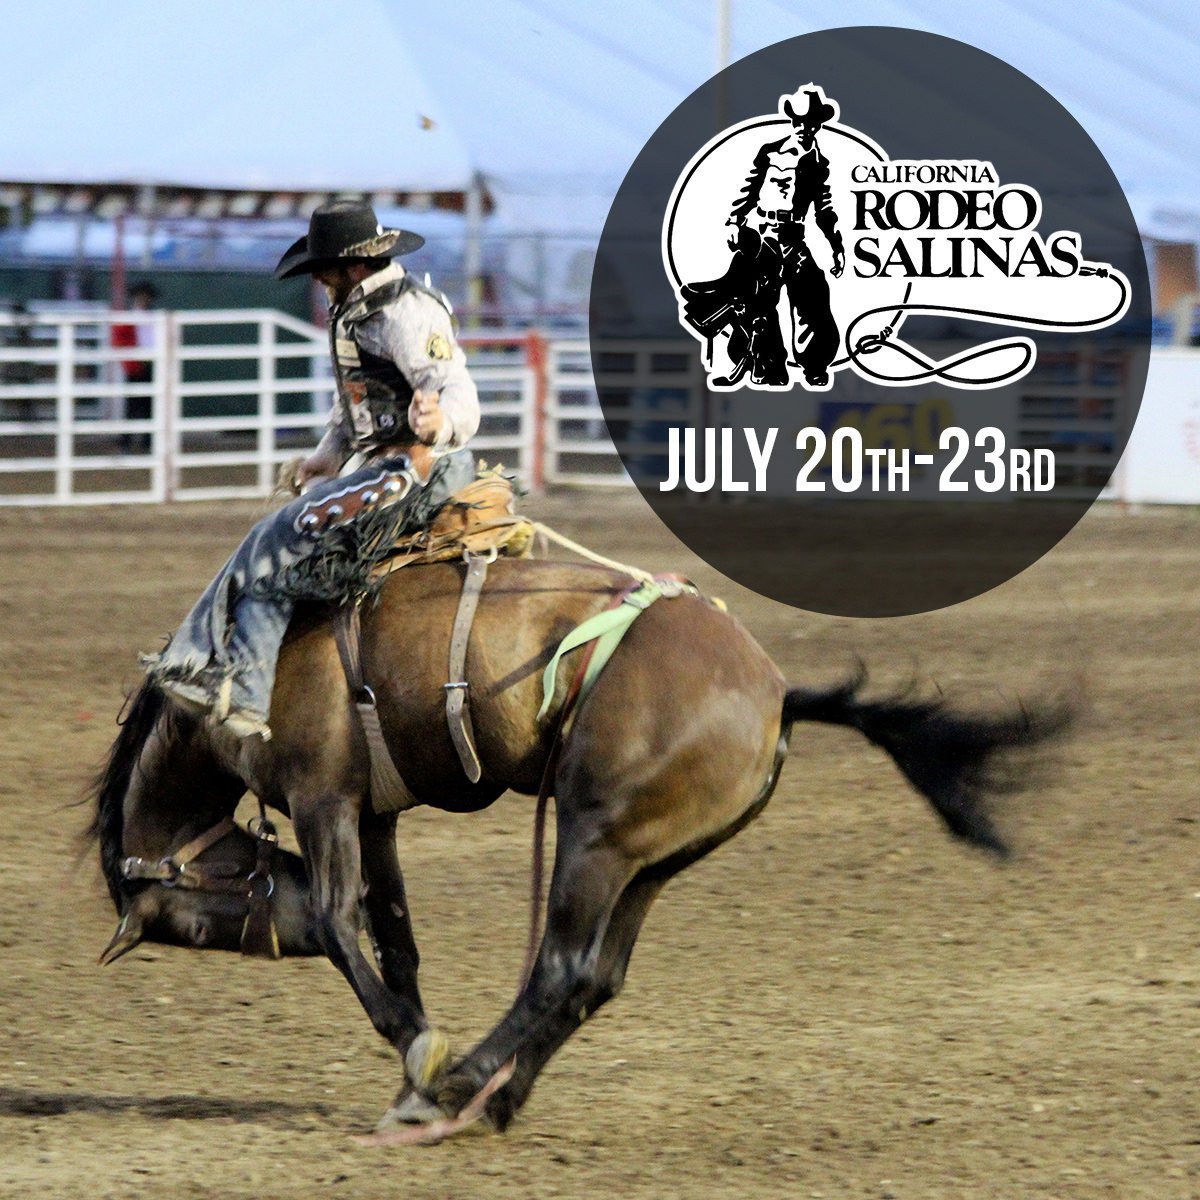 California Rodeo Salinas July 20th - 23rd 2017